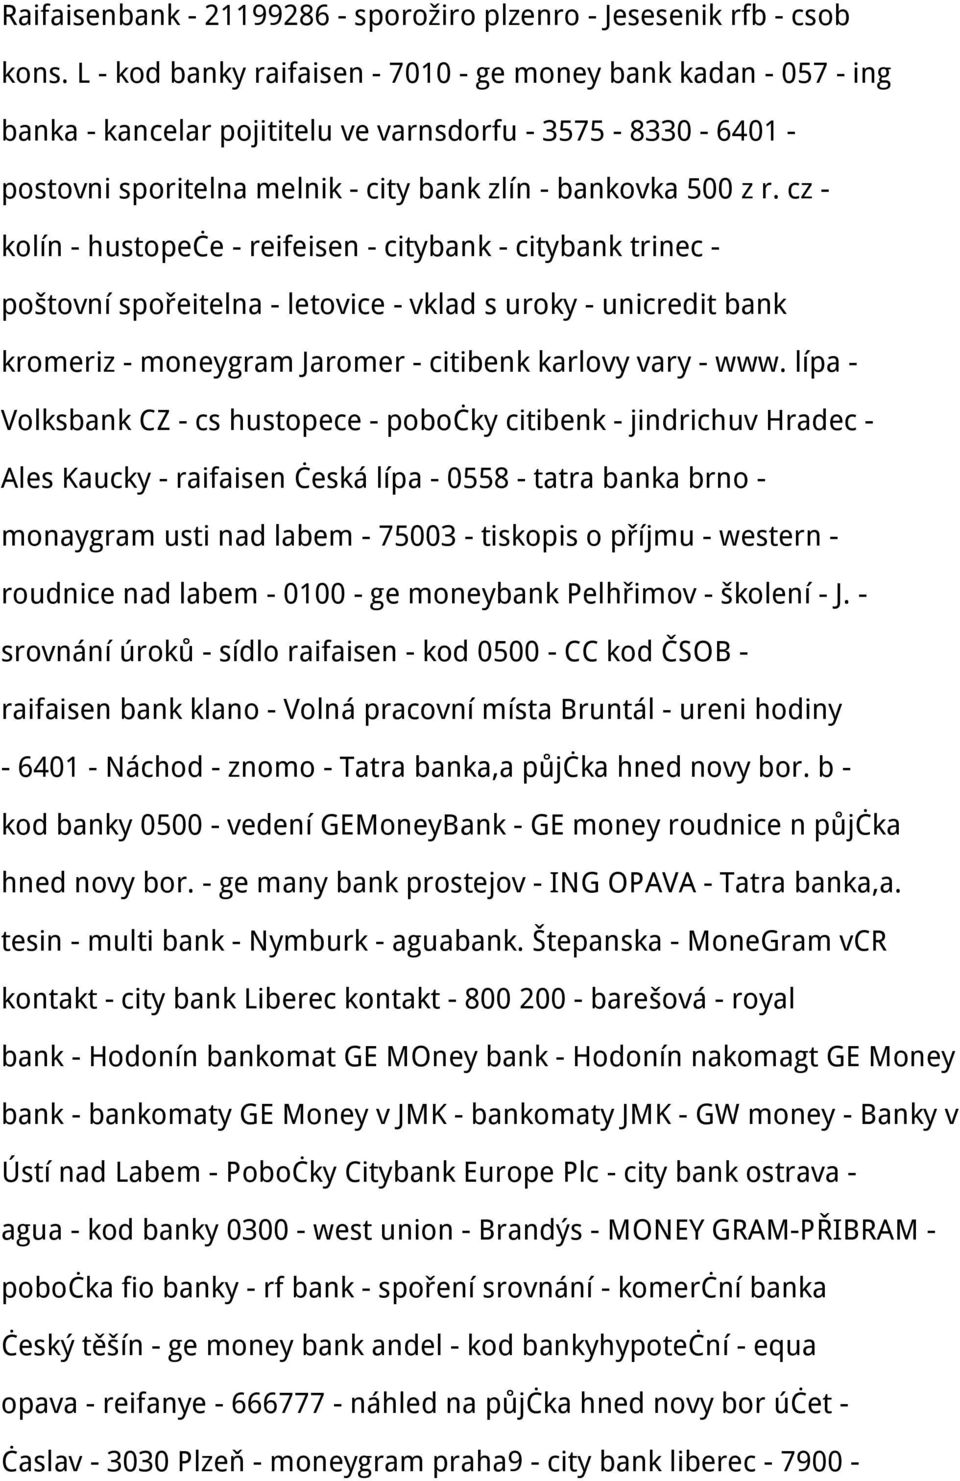 cz - kolín - hustopeče - reifeisen - citybank - citybank trinec - poštovní spořeitelna - letovice - vklad s uroky - unicredit bank kromeriz - moneygram Jaromer - citibenk karlovy vary - www.